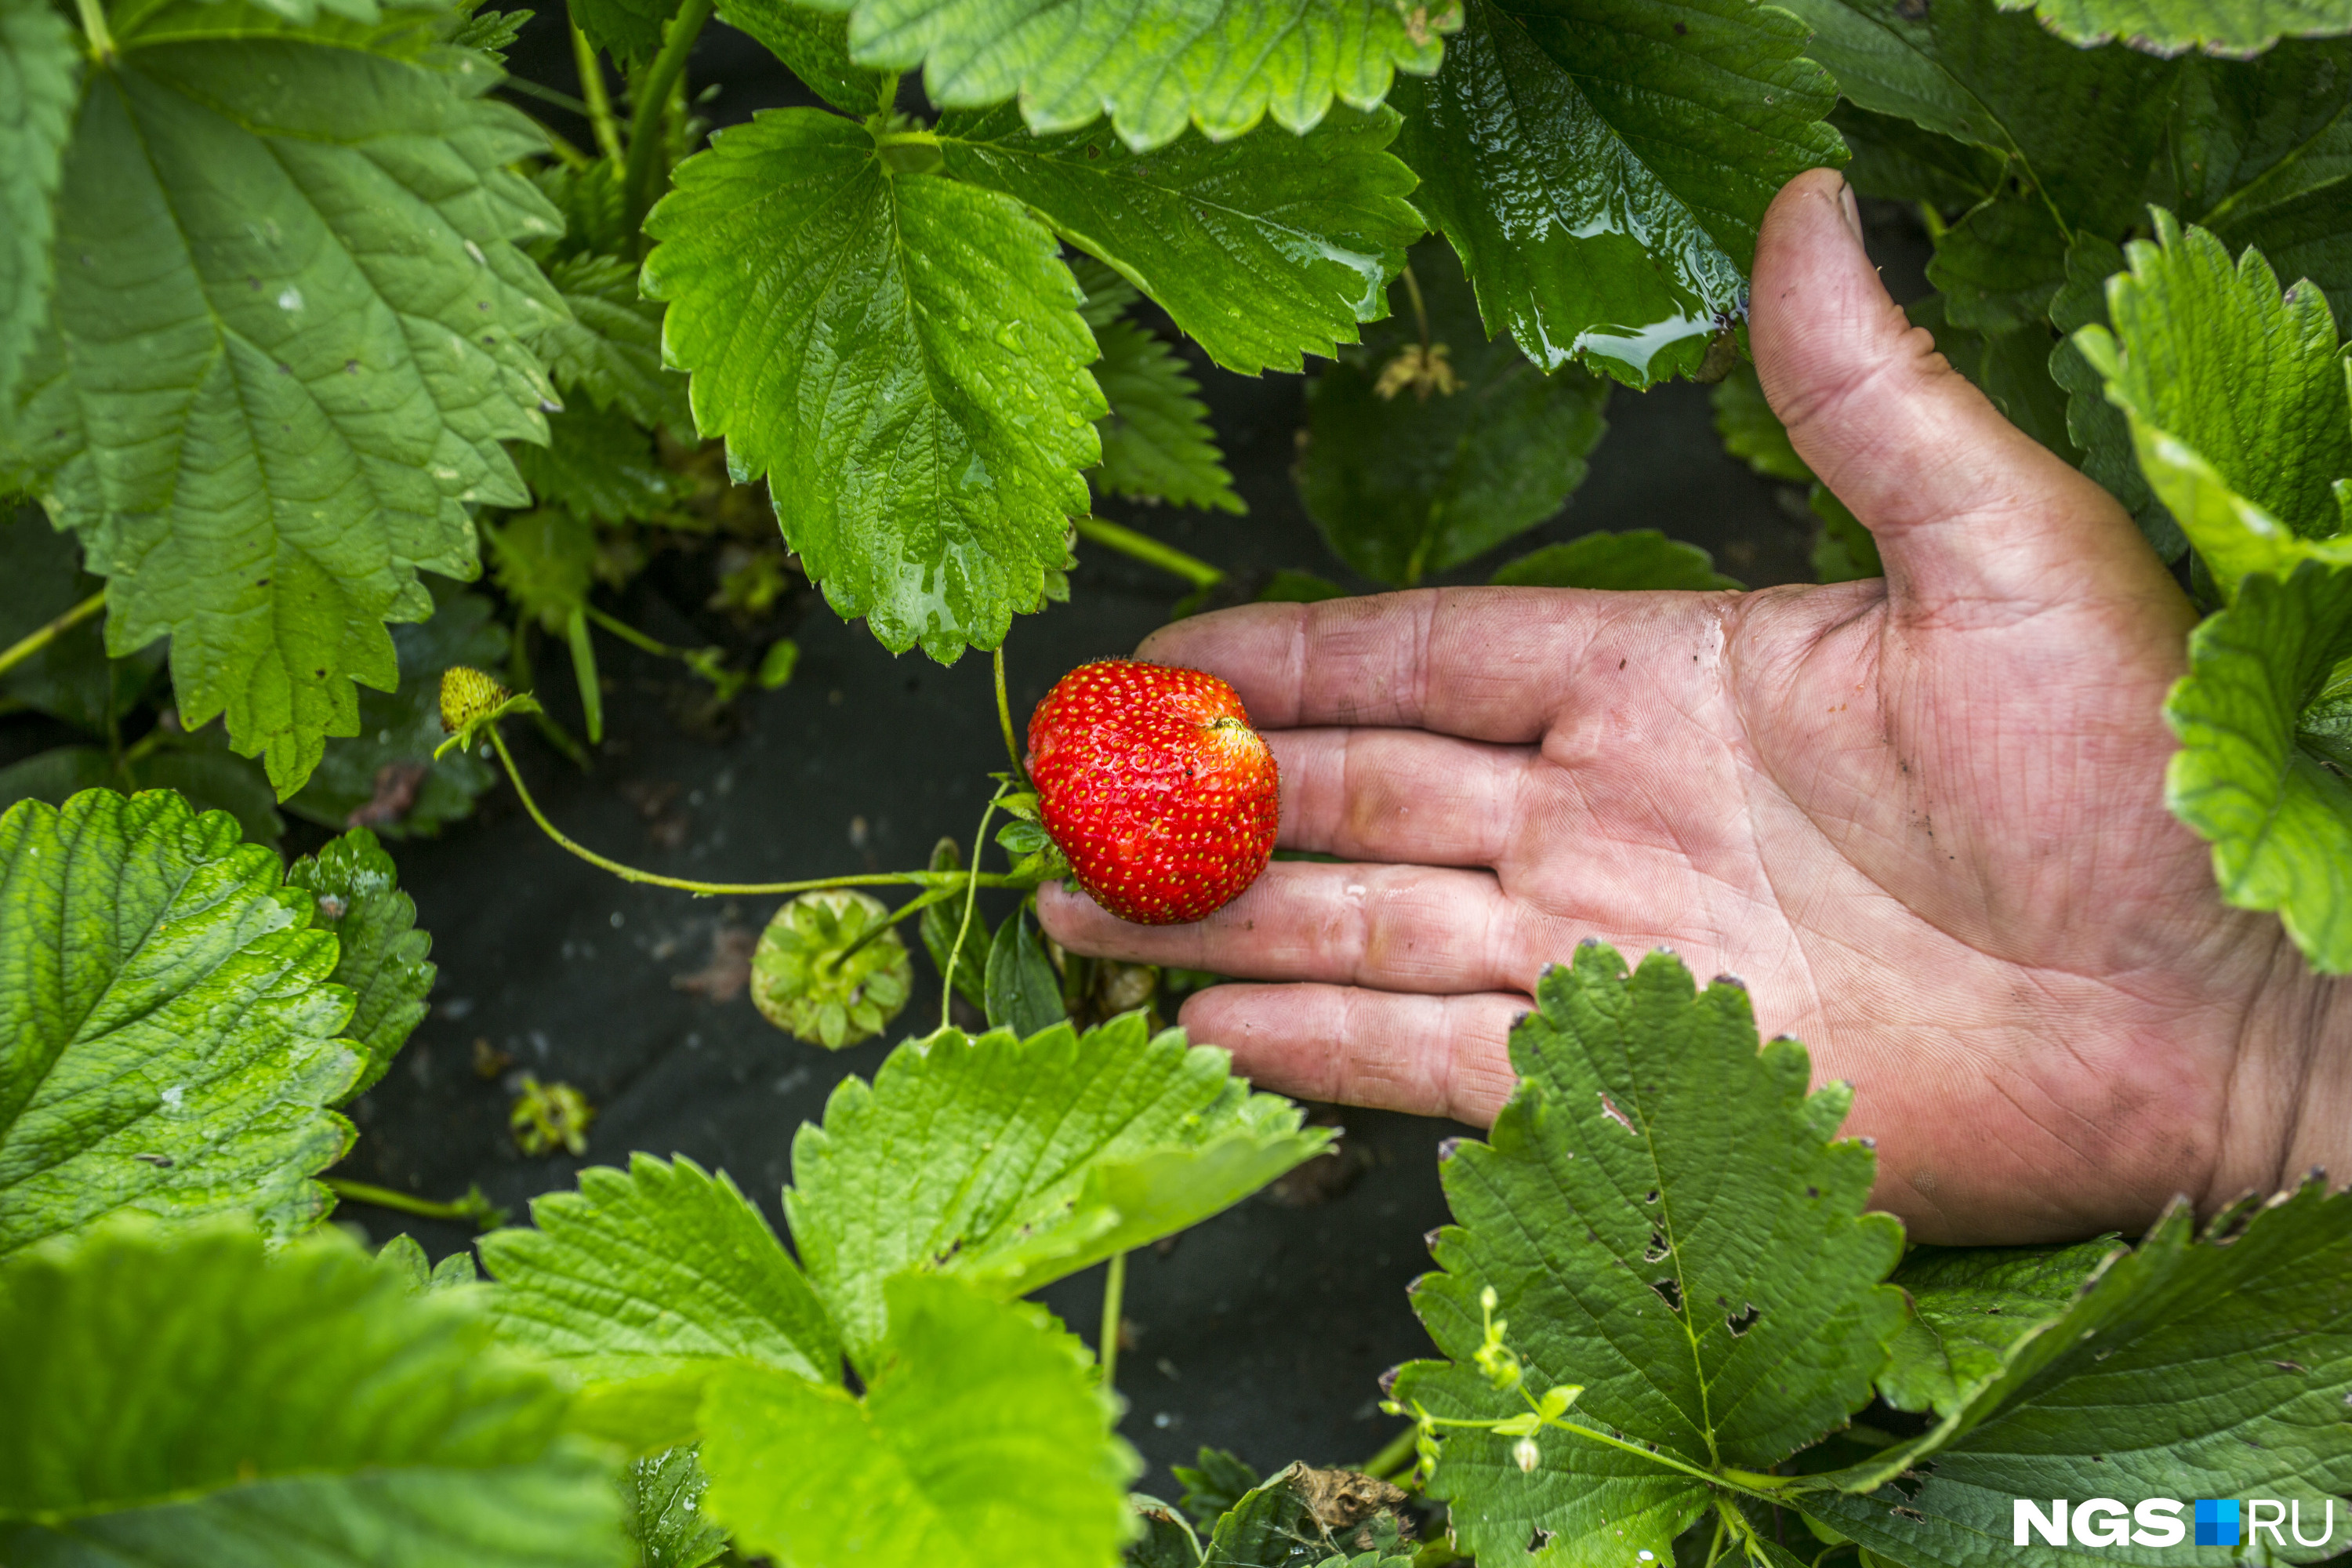 Что делать с клубникой после сбора урожая, чтобы собрать сладкие ягодыследующим летом - 31 июля 2022 - НГС